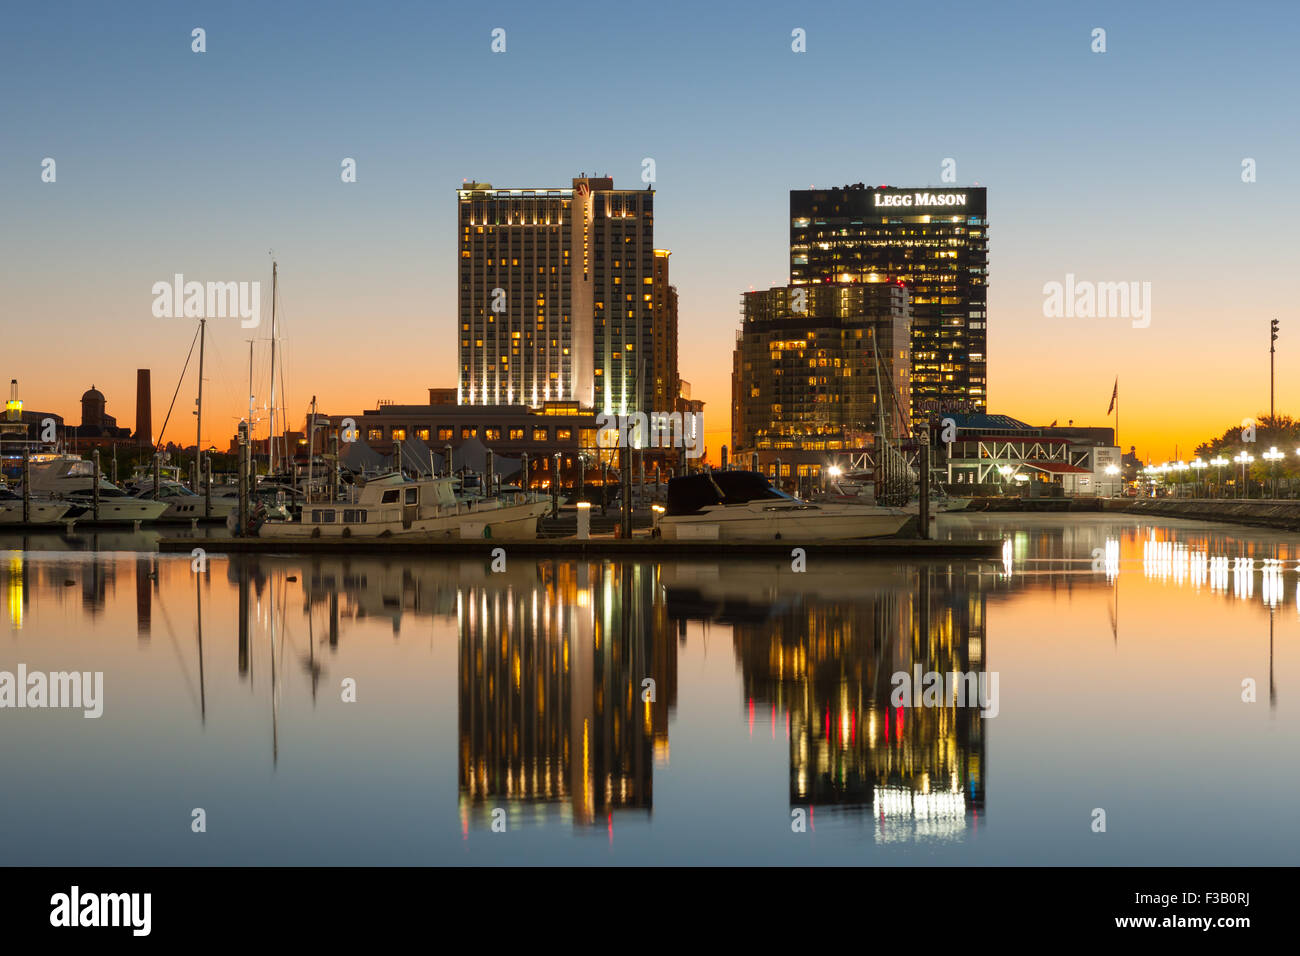 Die Baltimore Harbor East Entwicklung einschließlich Baltimore Marriott Waterfront Hotel und Legg Mason Gebäude in der Morgendämmerung. Stockfoto